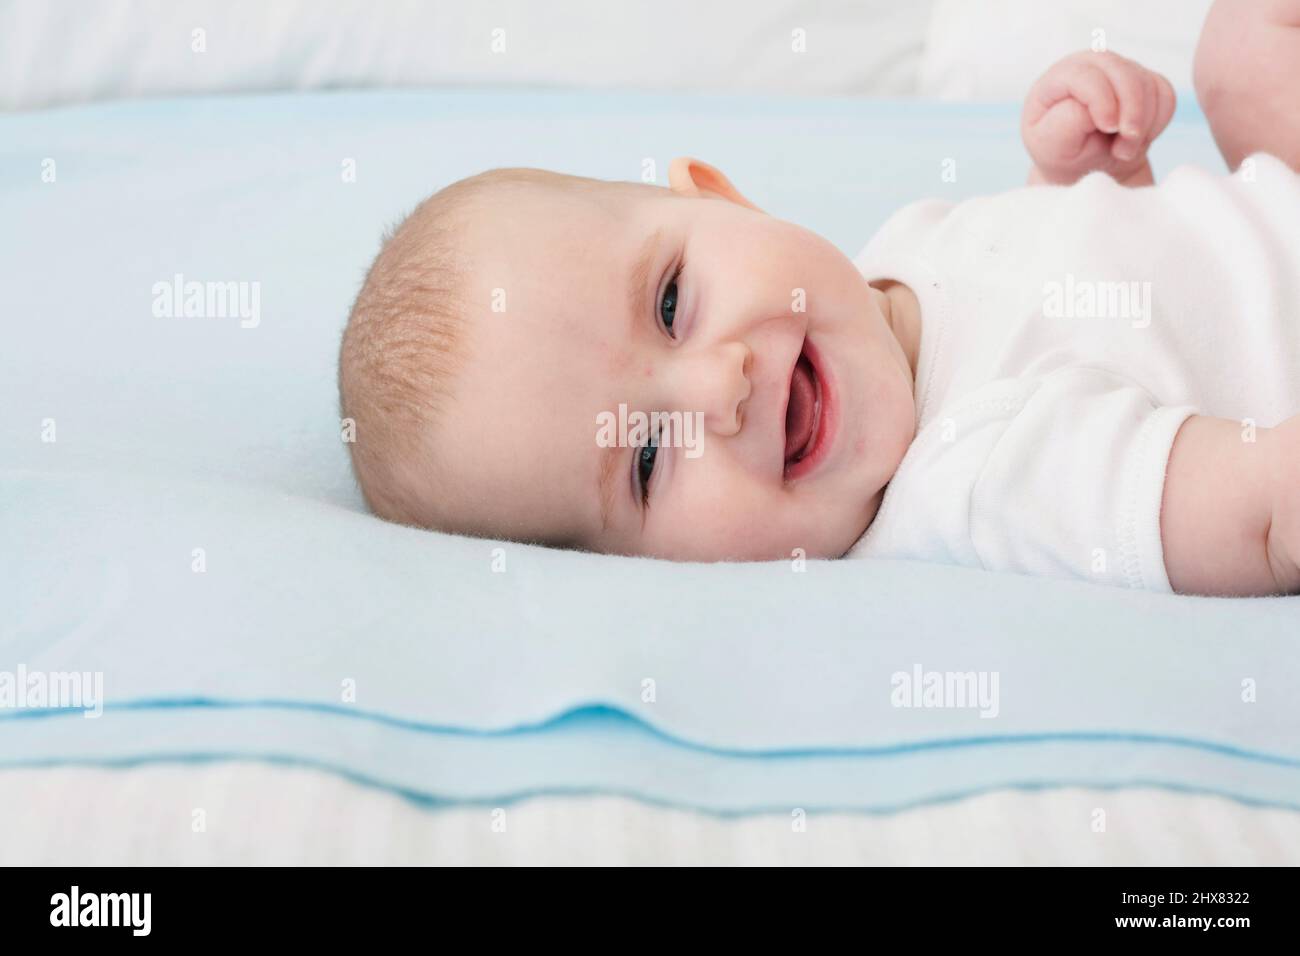 Kleines Mädchen, das sich auf eine blaue Decke legt, Kopf zur Seite gedreht, lachend, Nahaufnahme Stockfoto